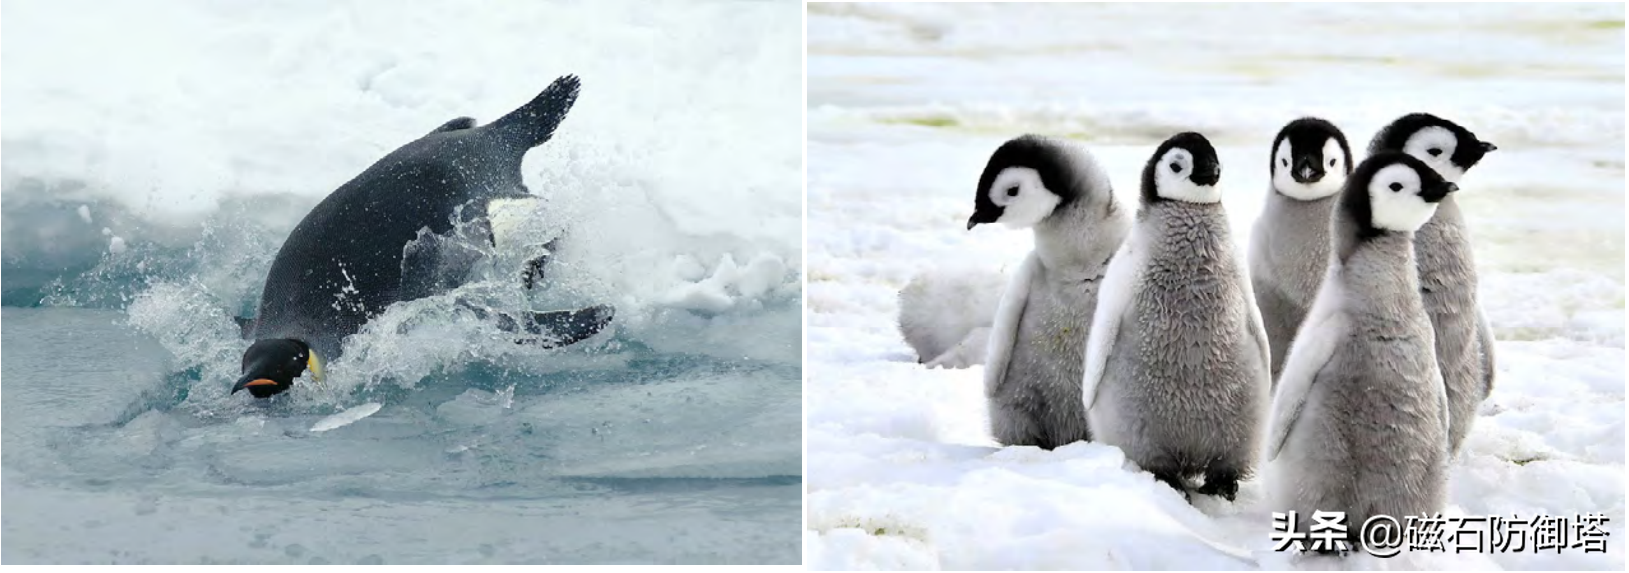 有翅不会飞，有脚不善走，常伴冰与寒，水中显身手——浅谈企鹅